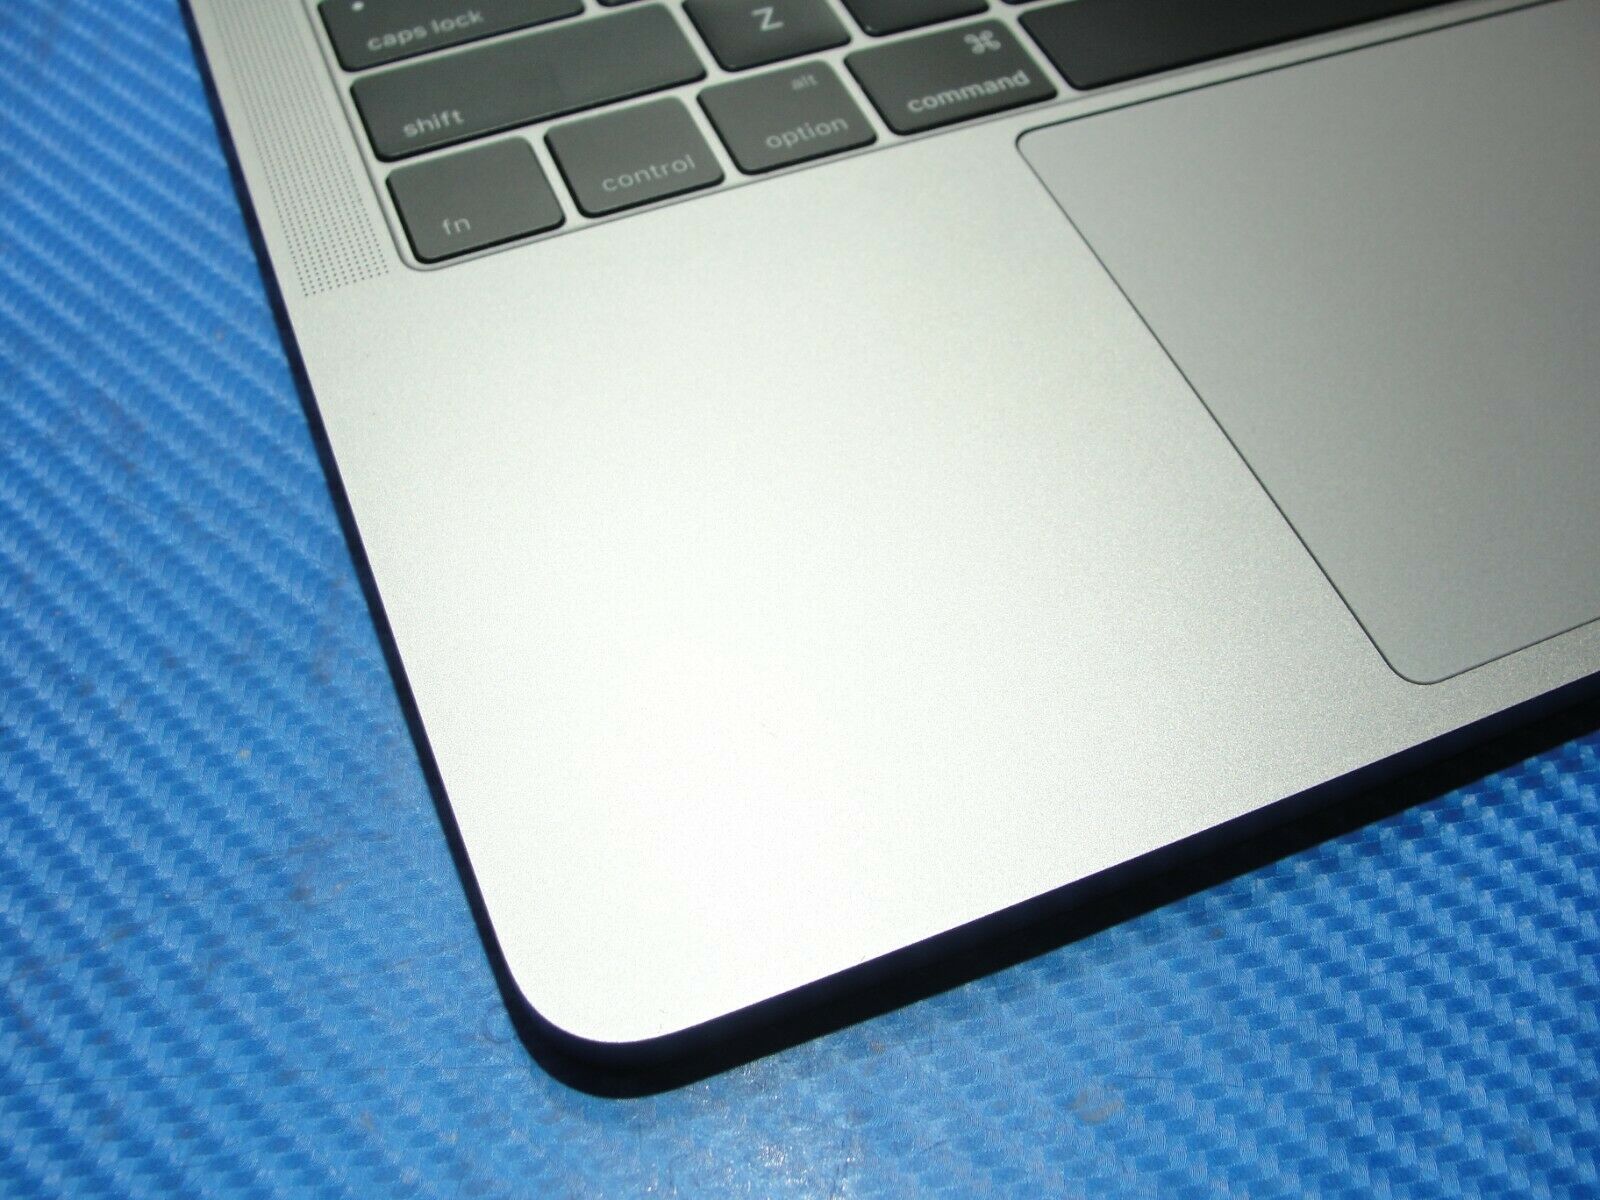 MacBook Pro A1708 13.3